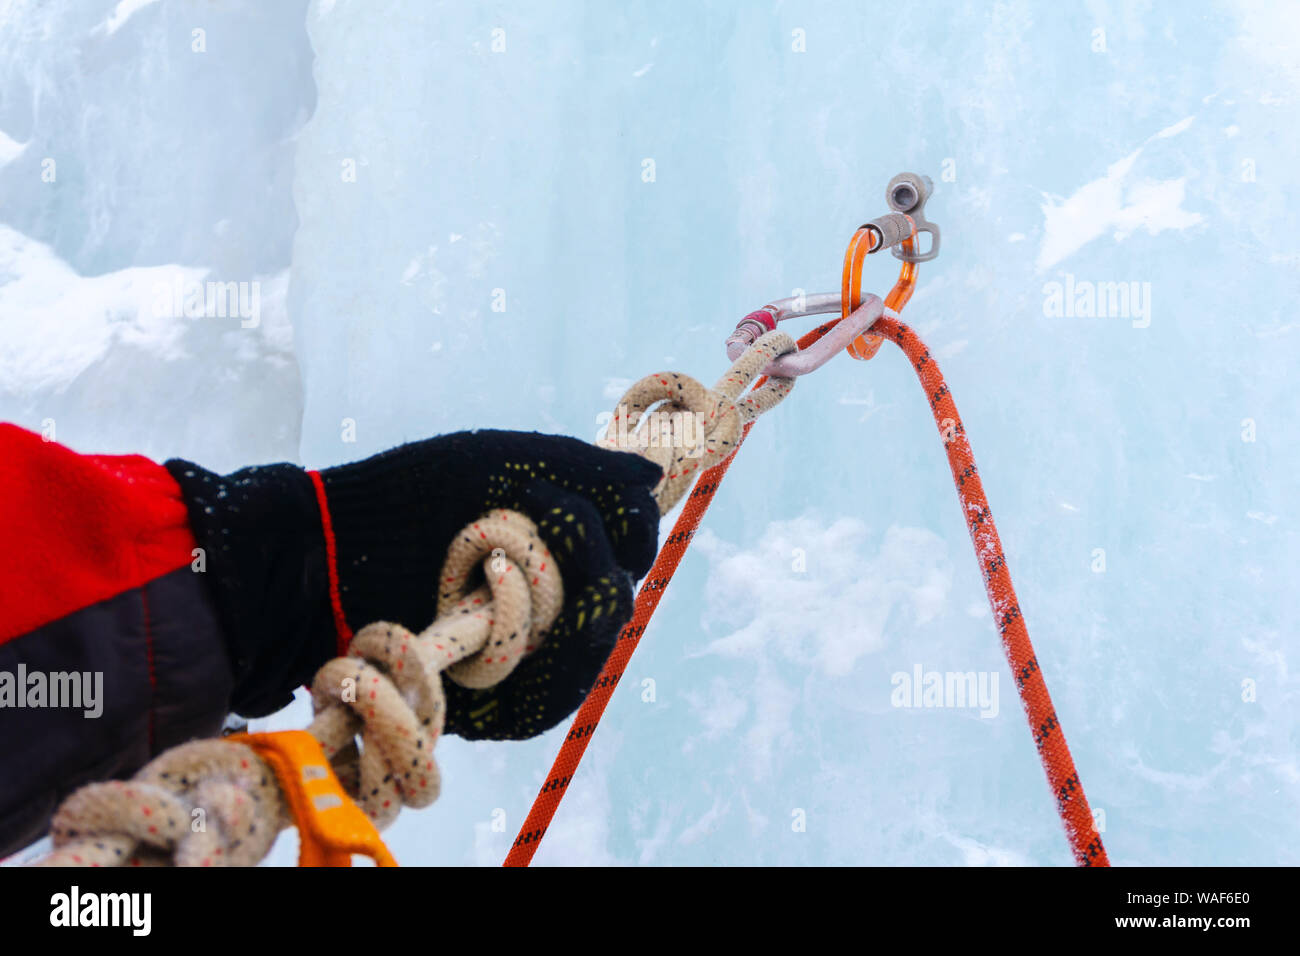 Cascade de glace d'ancrage avec broche à glace, corde de sécurité, mousquetons et bras du grimpeur, gros plan Banque D'Images